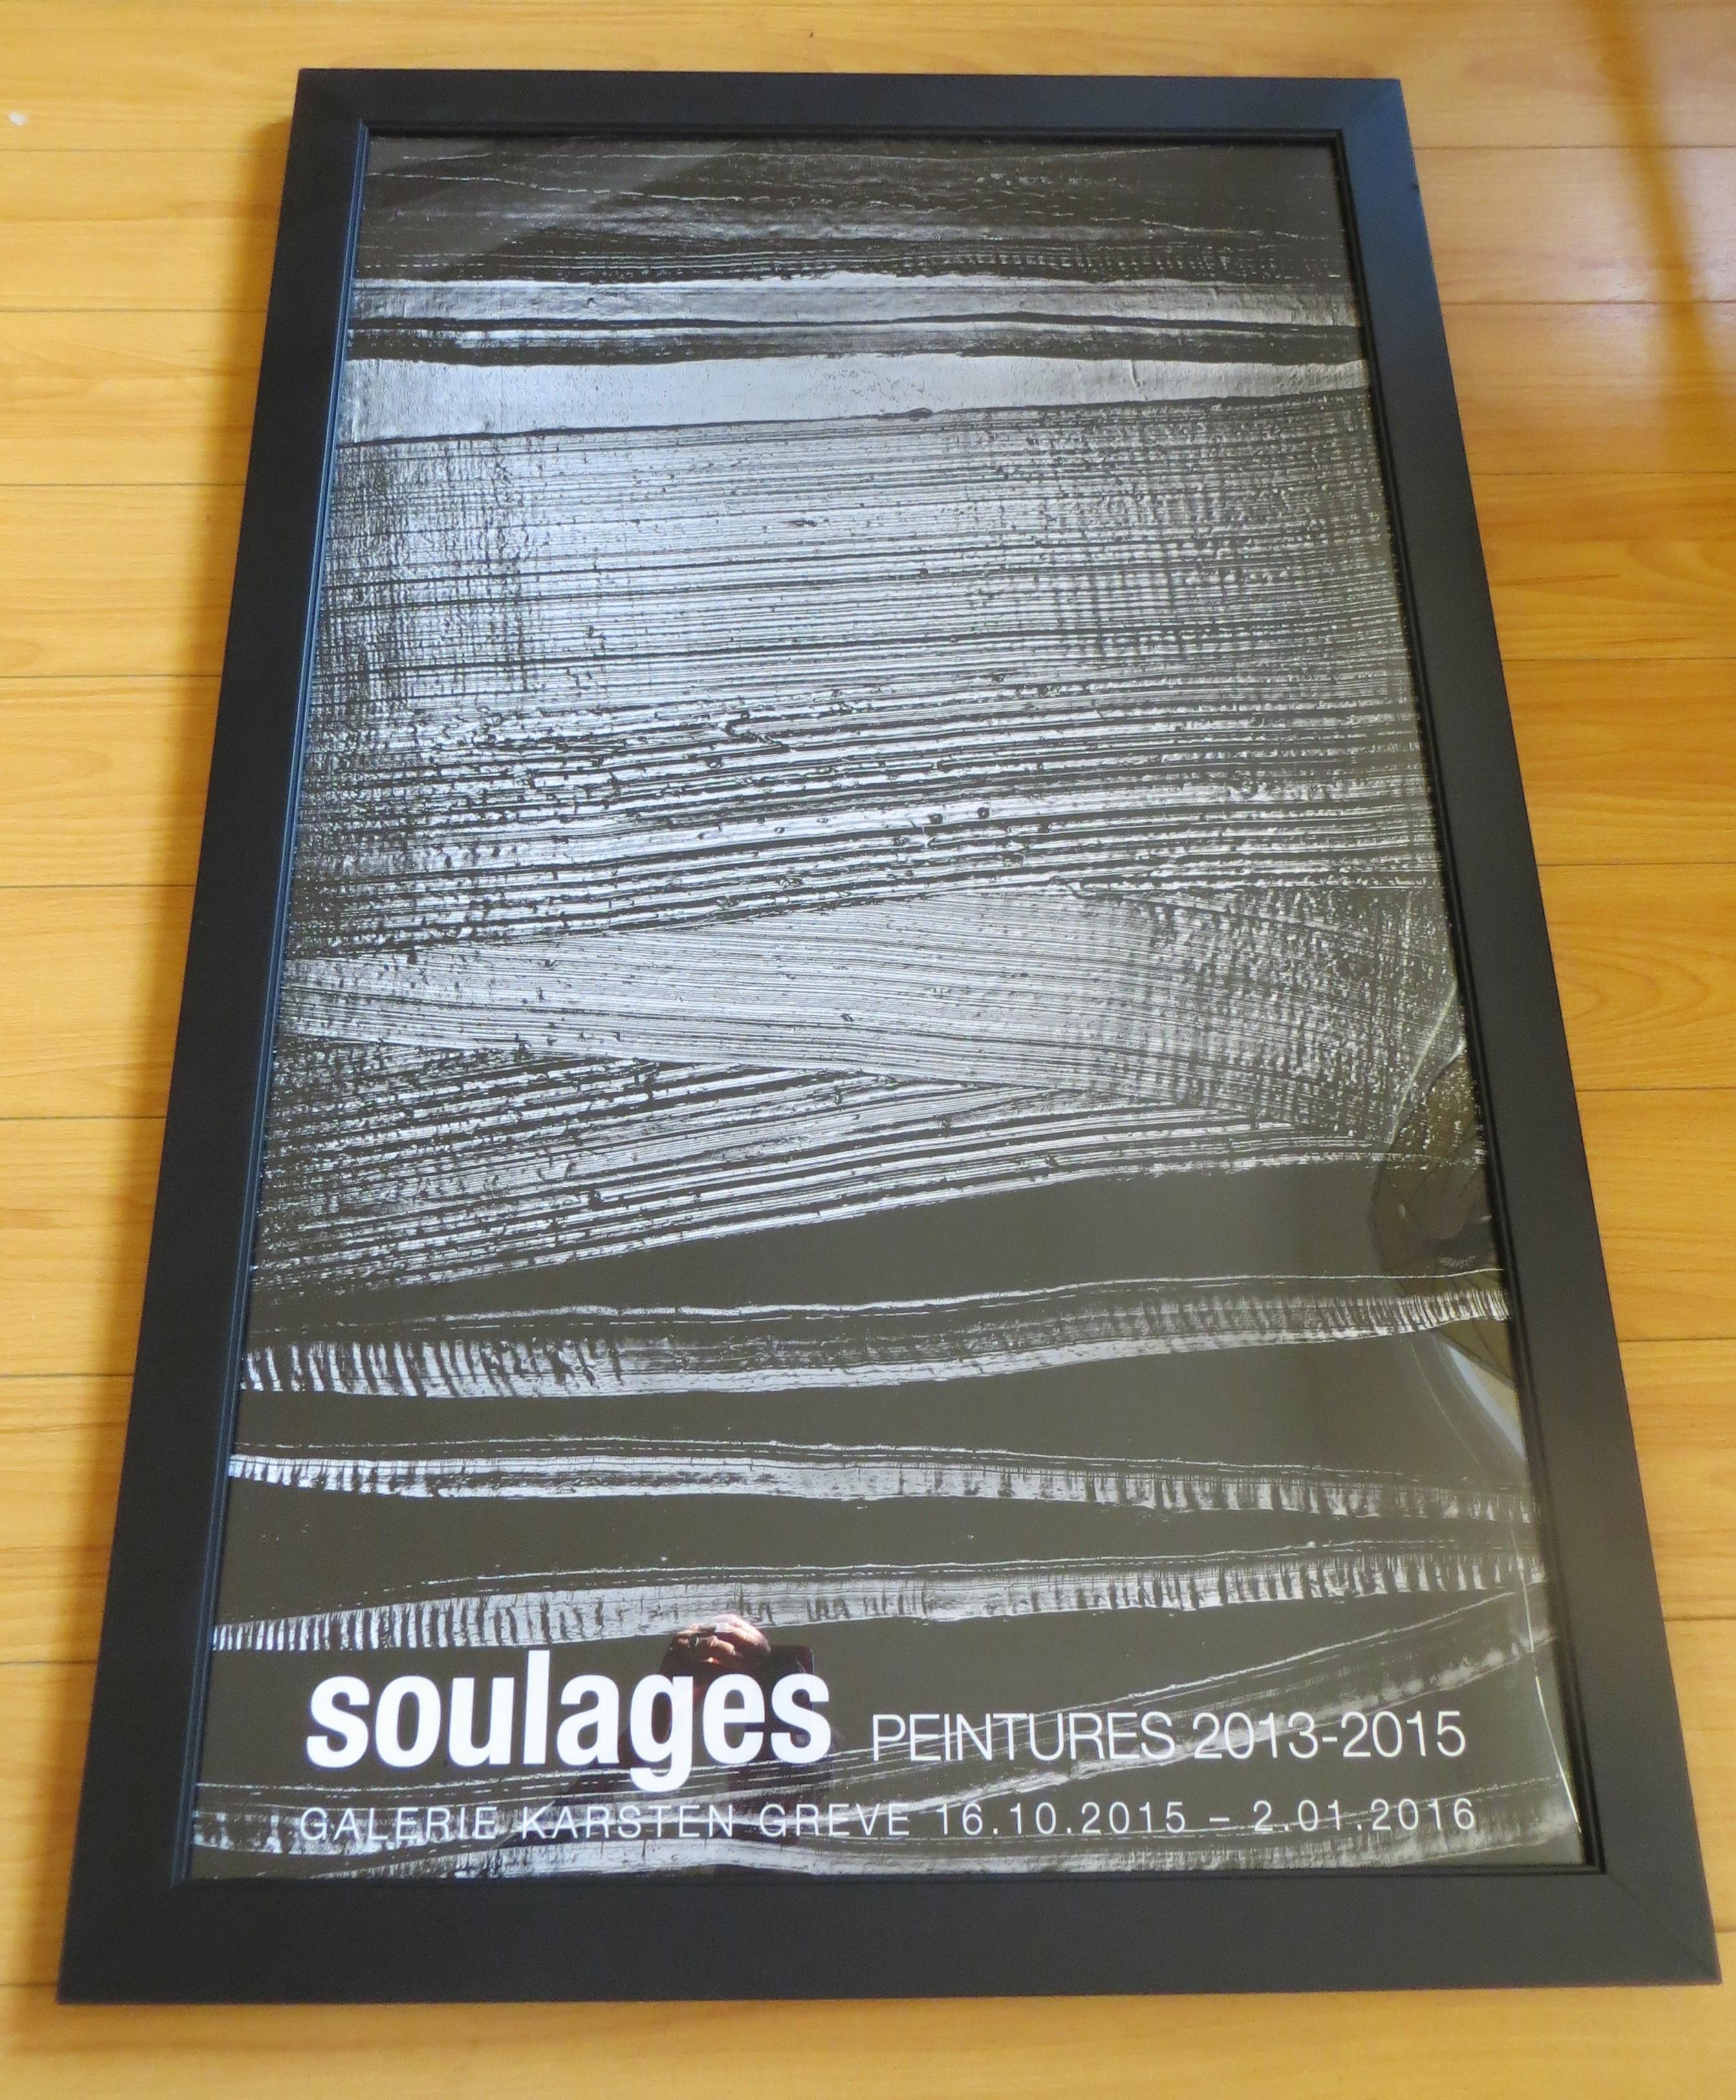 Pierre Soulages est considéré comme une figure majeure de l'abstraction européenne d'après-guerre, aux côtés de Hans Hartung, Georges Mathieu, Serge Poliakoff et Jean-Paul Riopelle. Il est particulièrement connu pour sa série de peintures